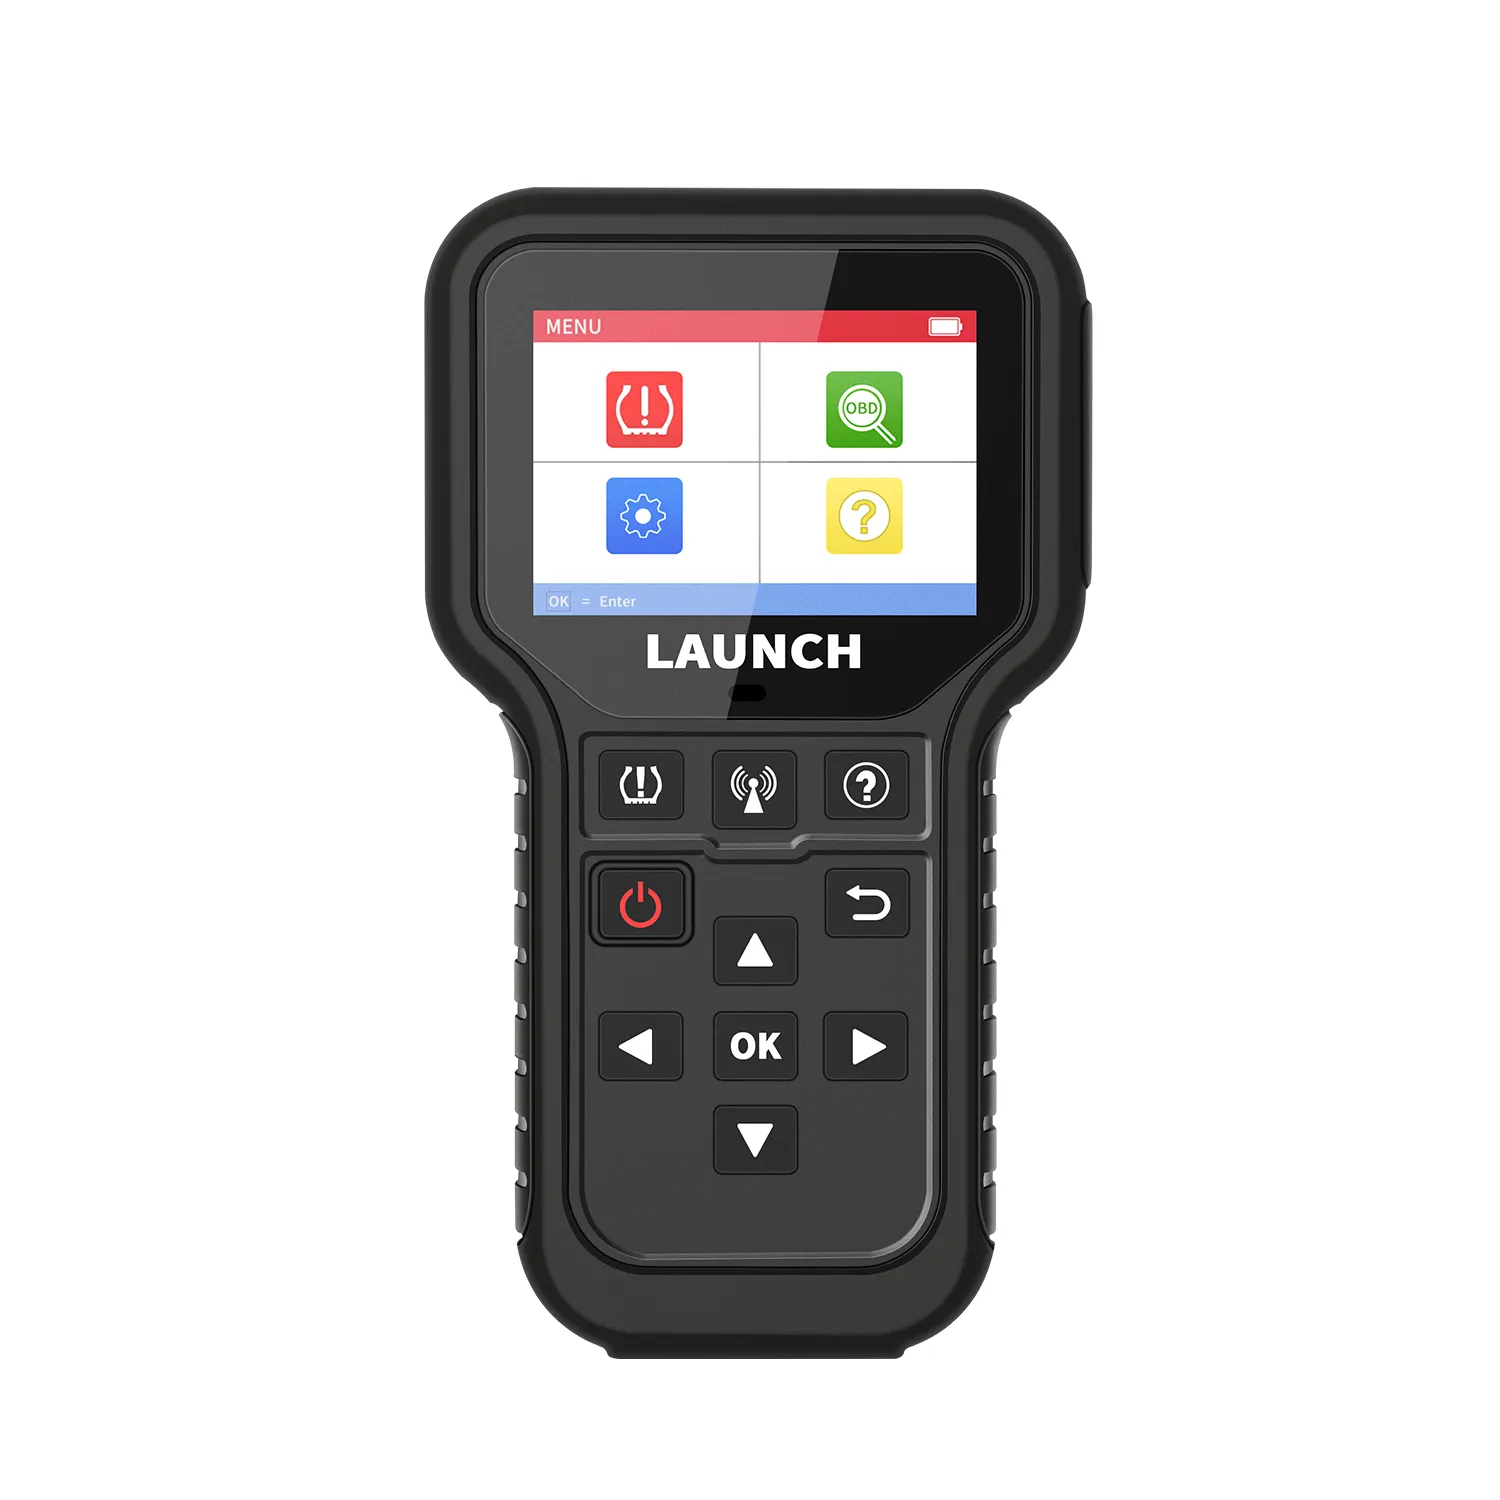 Лучшие продажи Запуск X-431 CRT 5011E Obd сканер, Wi-Fi, BT автомобильный Грузовик ключевой программист диагностический набор инструментов для автомобиля